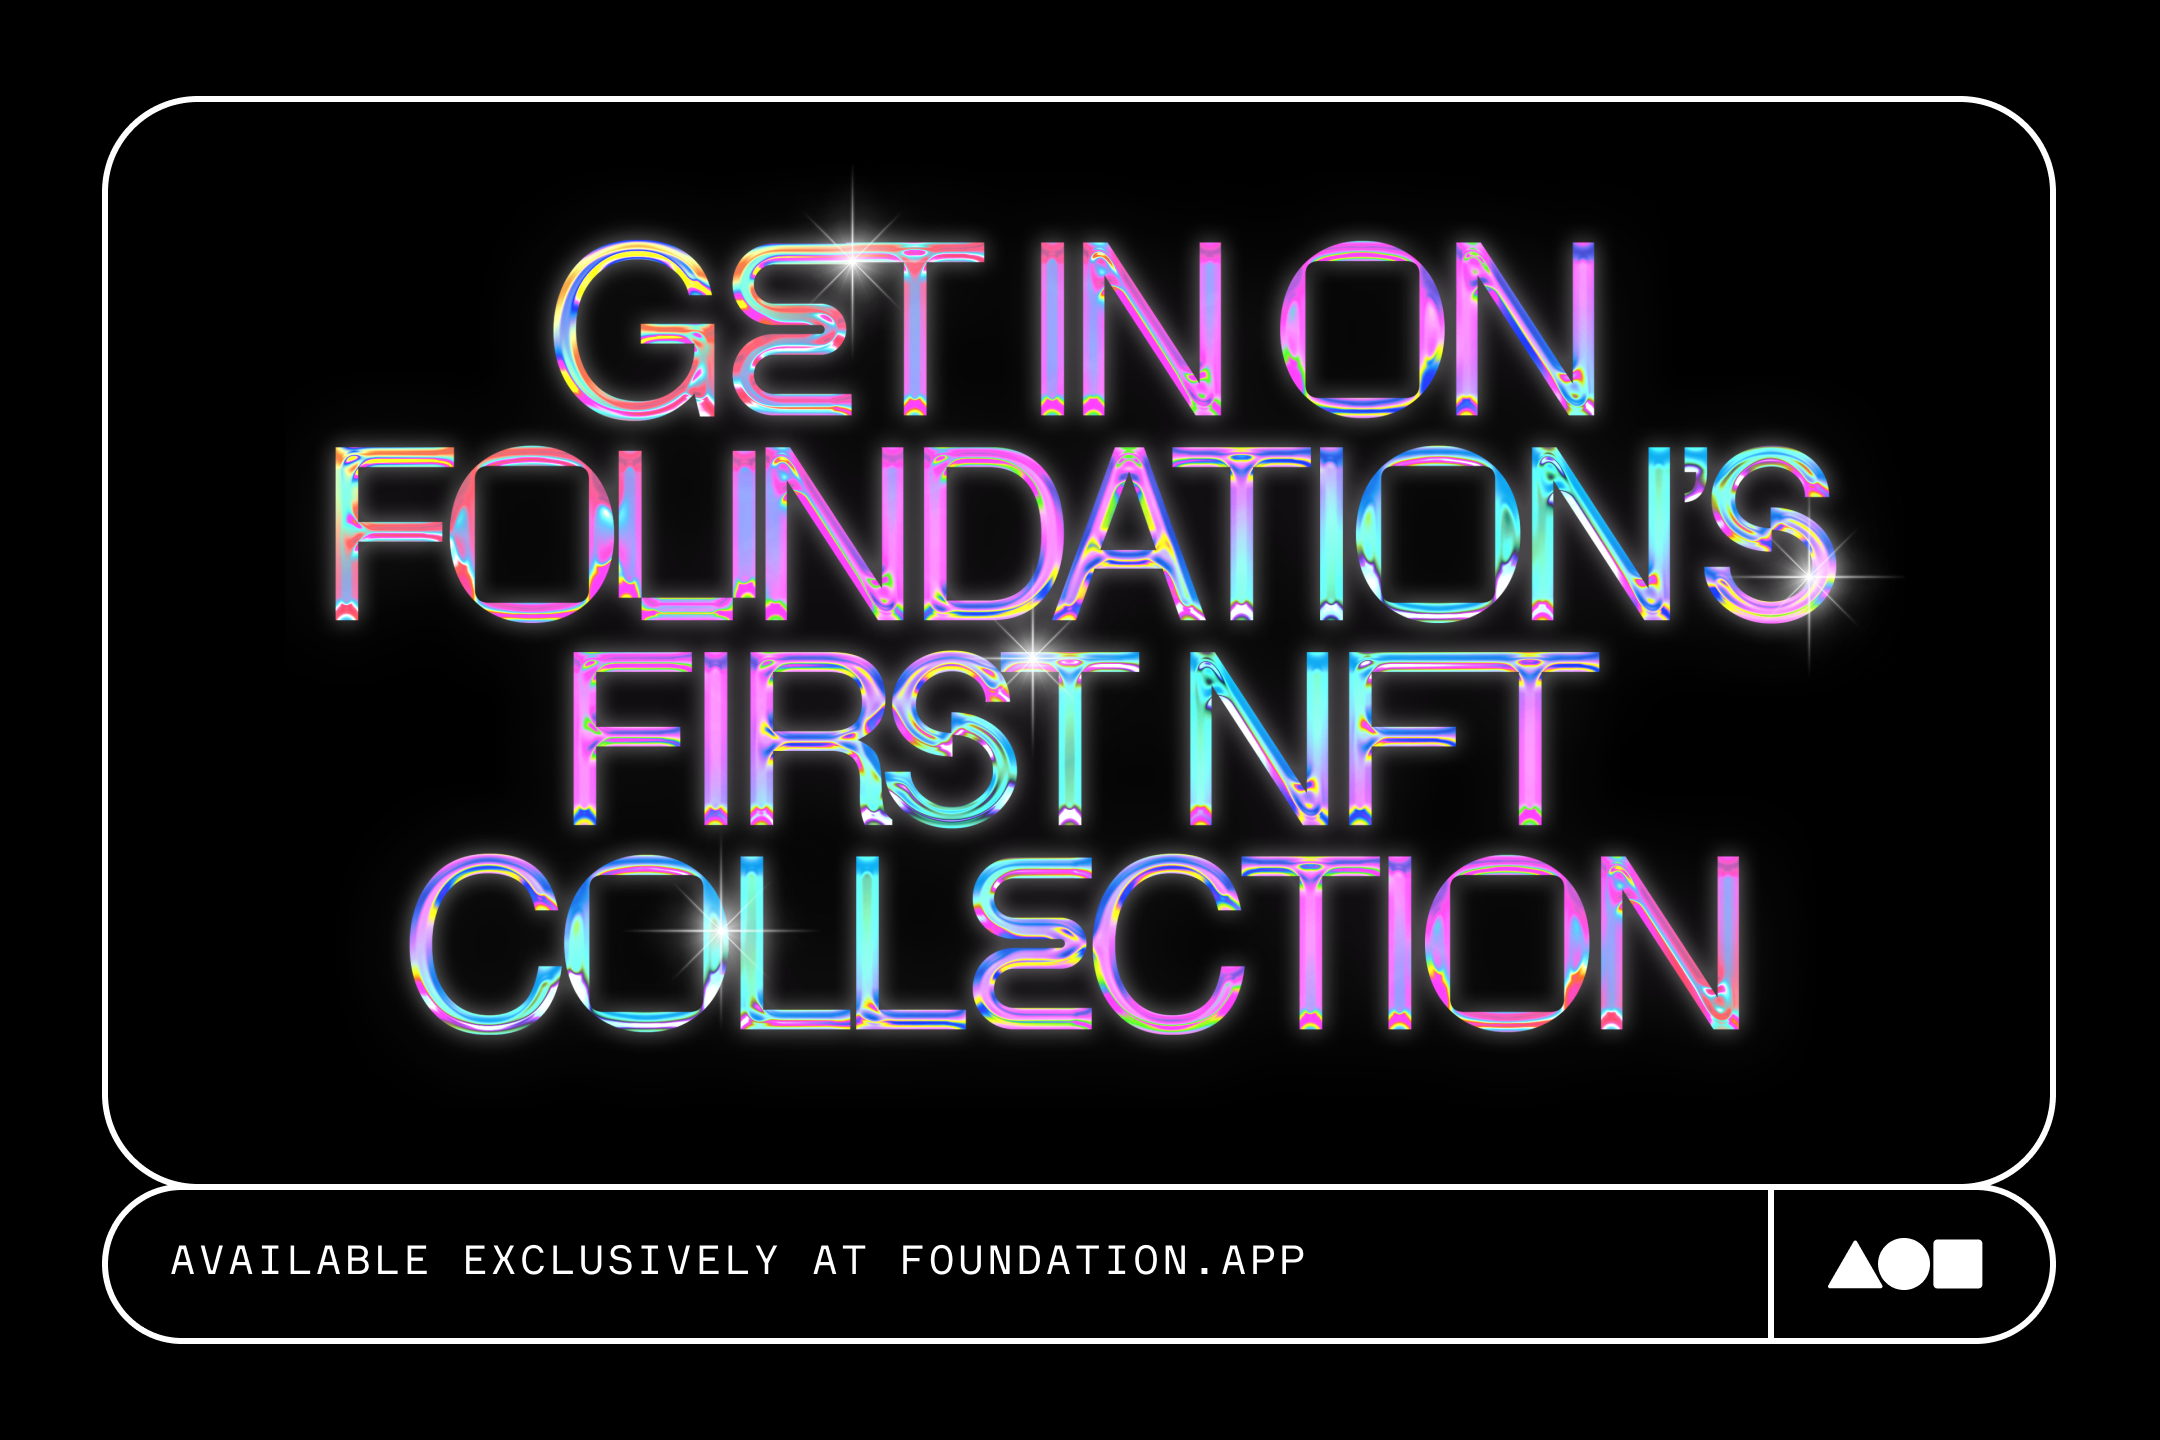 The NFT Foundation, Narrative Device